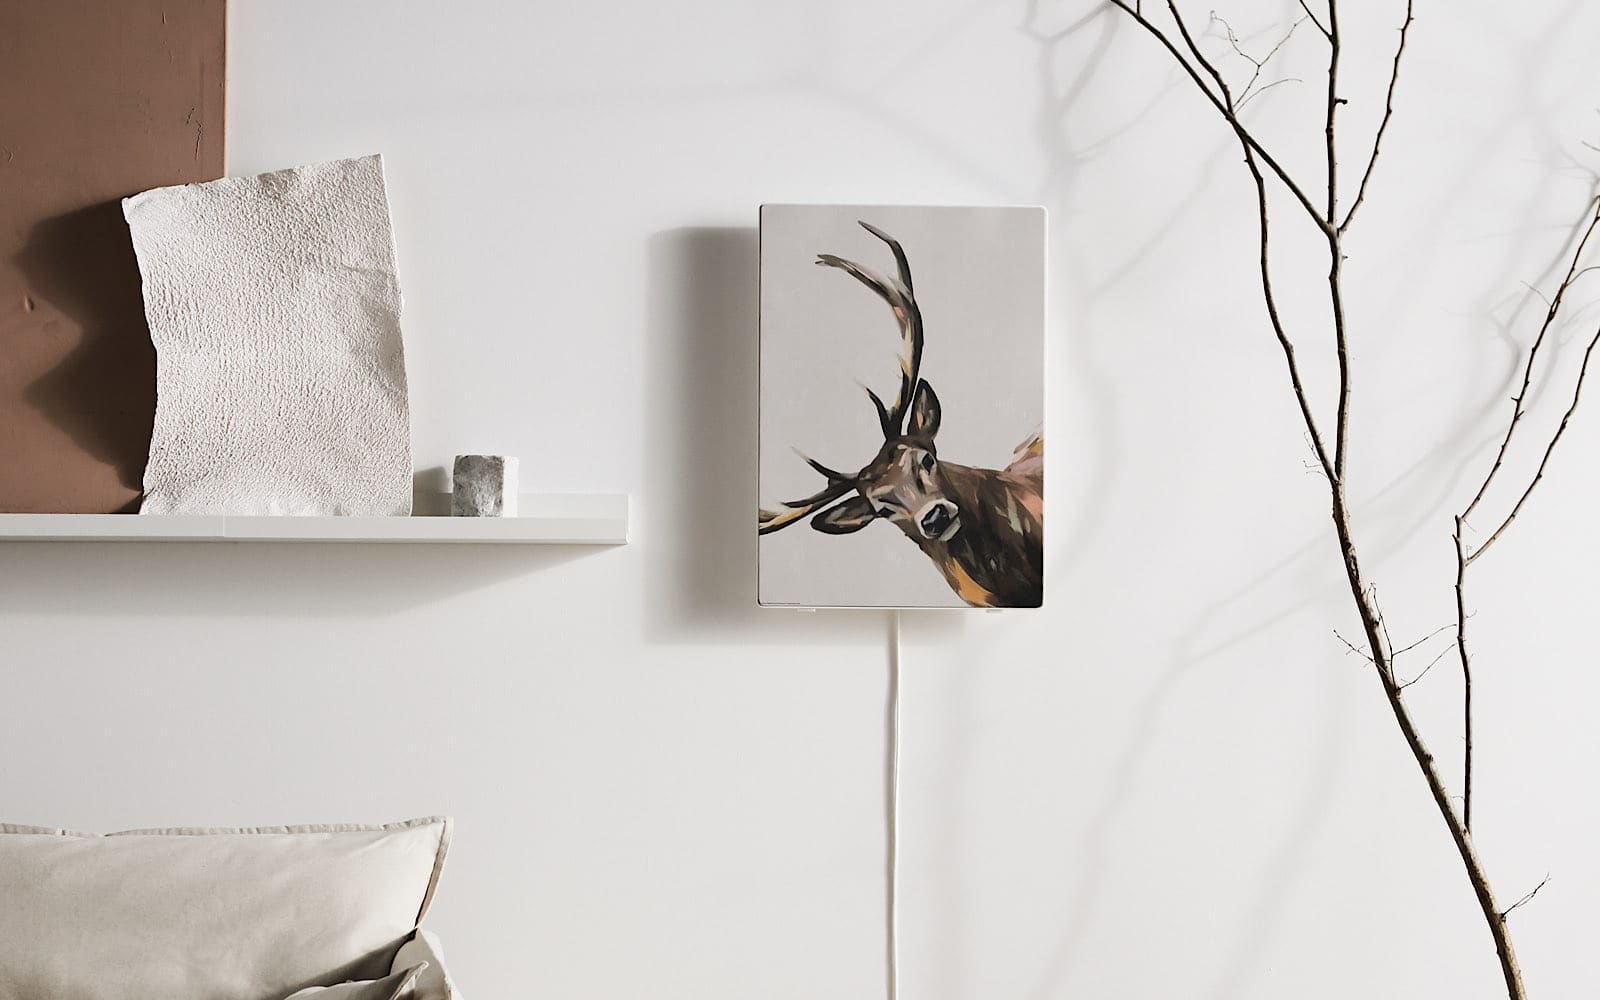 IKEA Symfonisk Picture Frame WiFi speaker